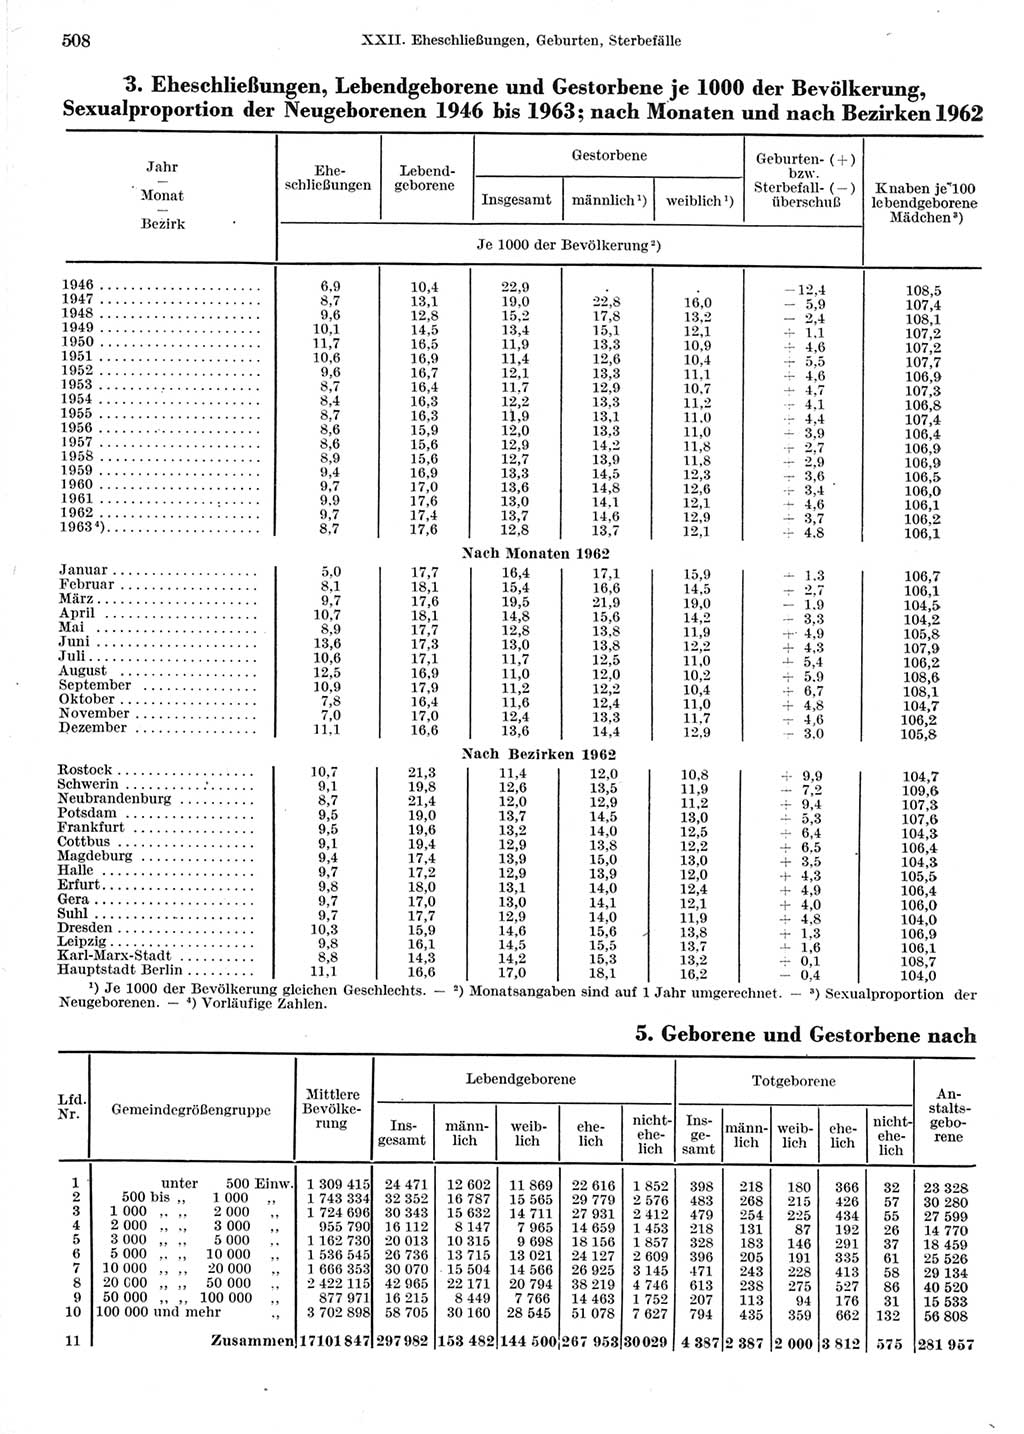 Statistisches Jahrbuch der Deutschen Demokratischen Republik (DDR) 1964, Seite 508 (Stat. Jb. DDR 1964, S. 508)